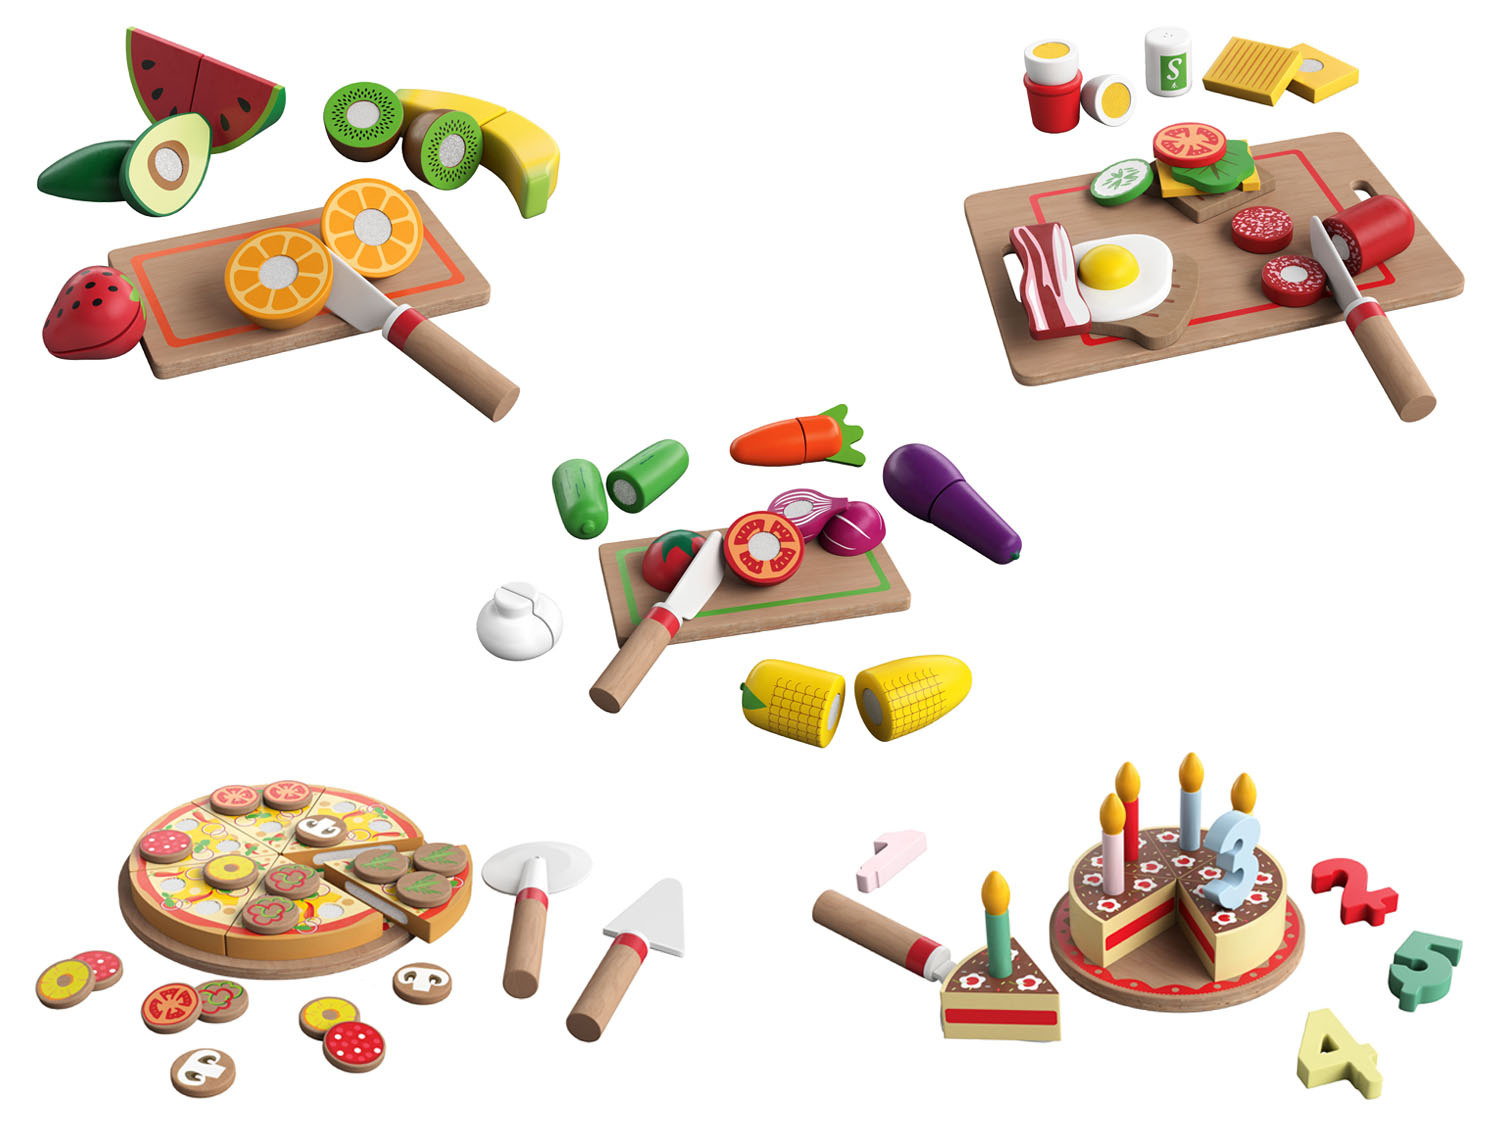 Redenaar zonlicht analogie Playtive Houten etenswarenset online kopen | LIDL